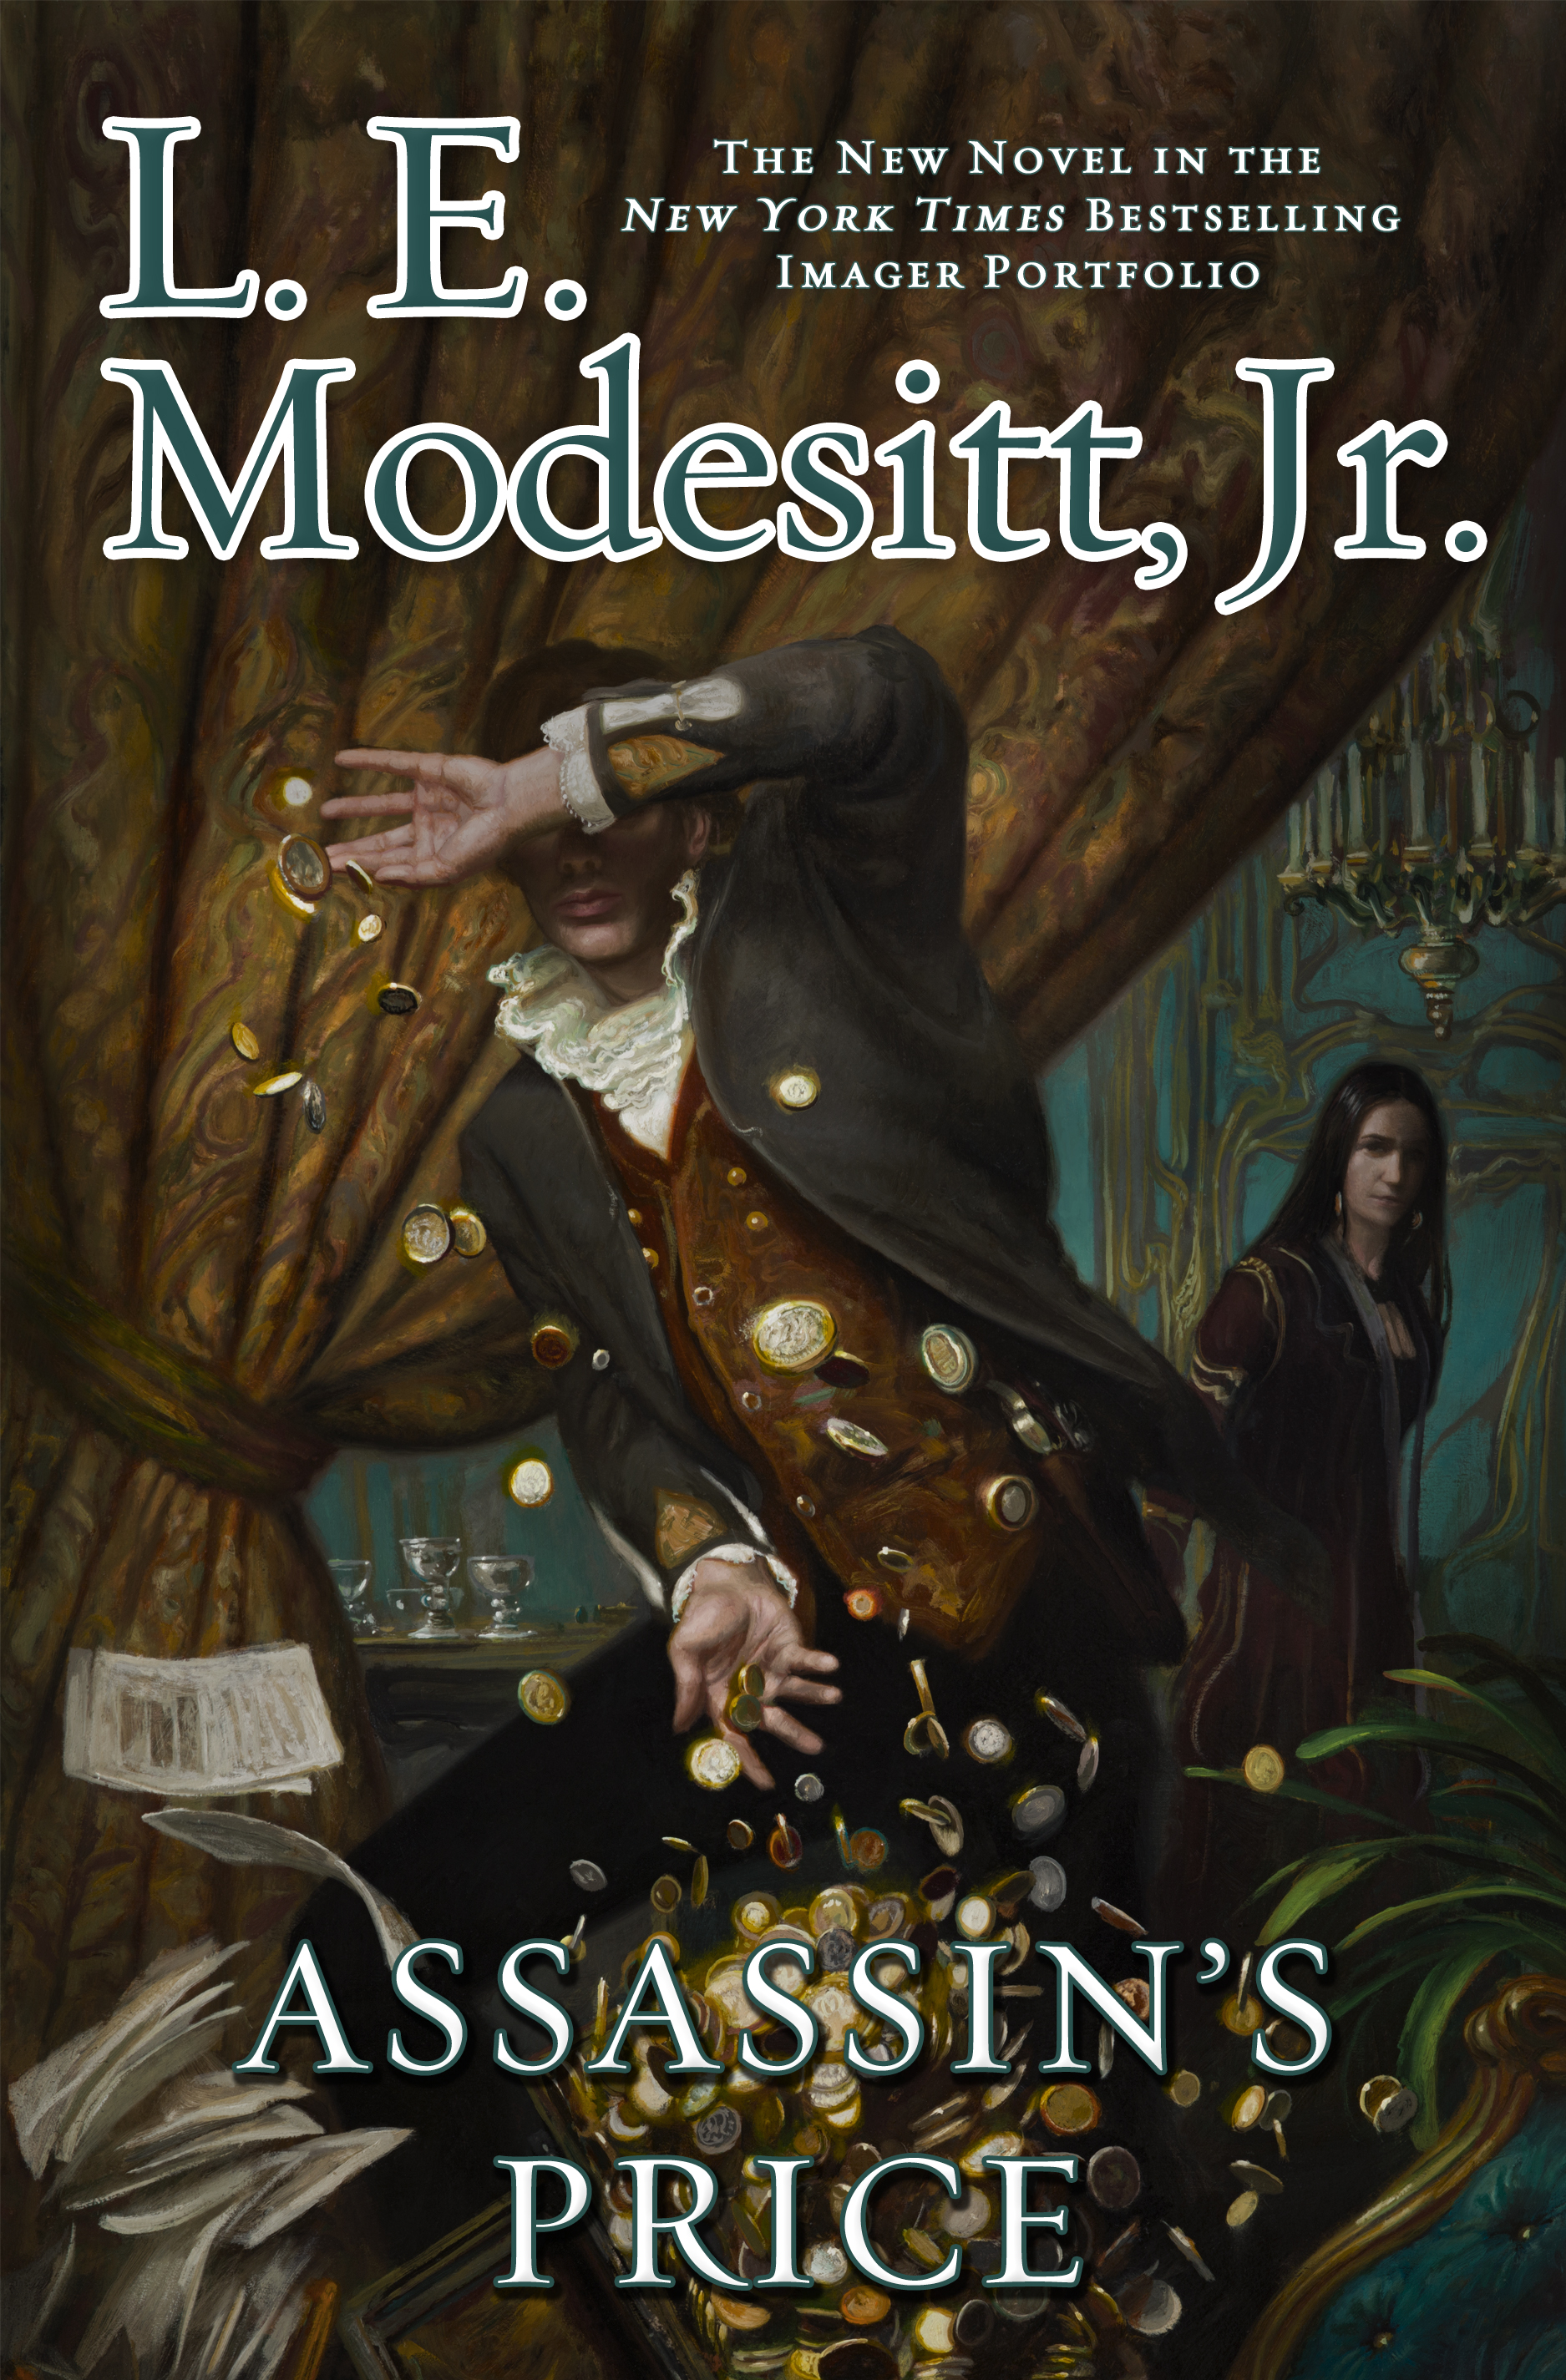 Assassin's Price by L. E. Modesitt, Jr.